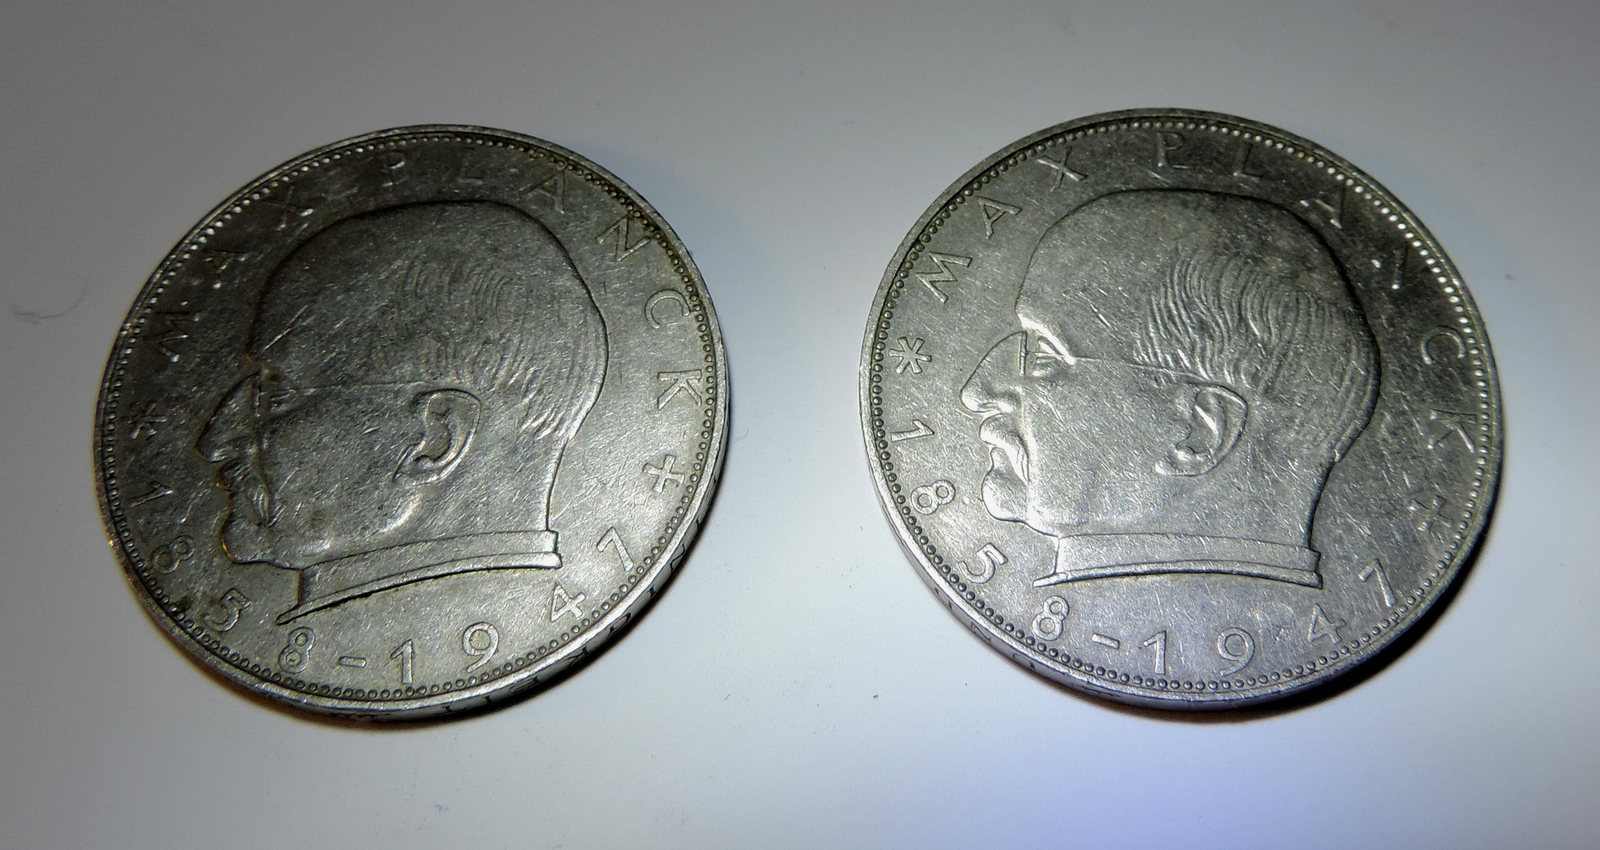 2 deutsche mark 1963 penny